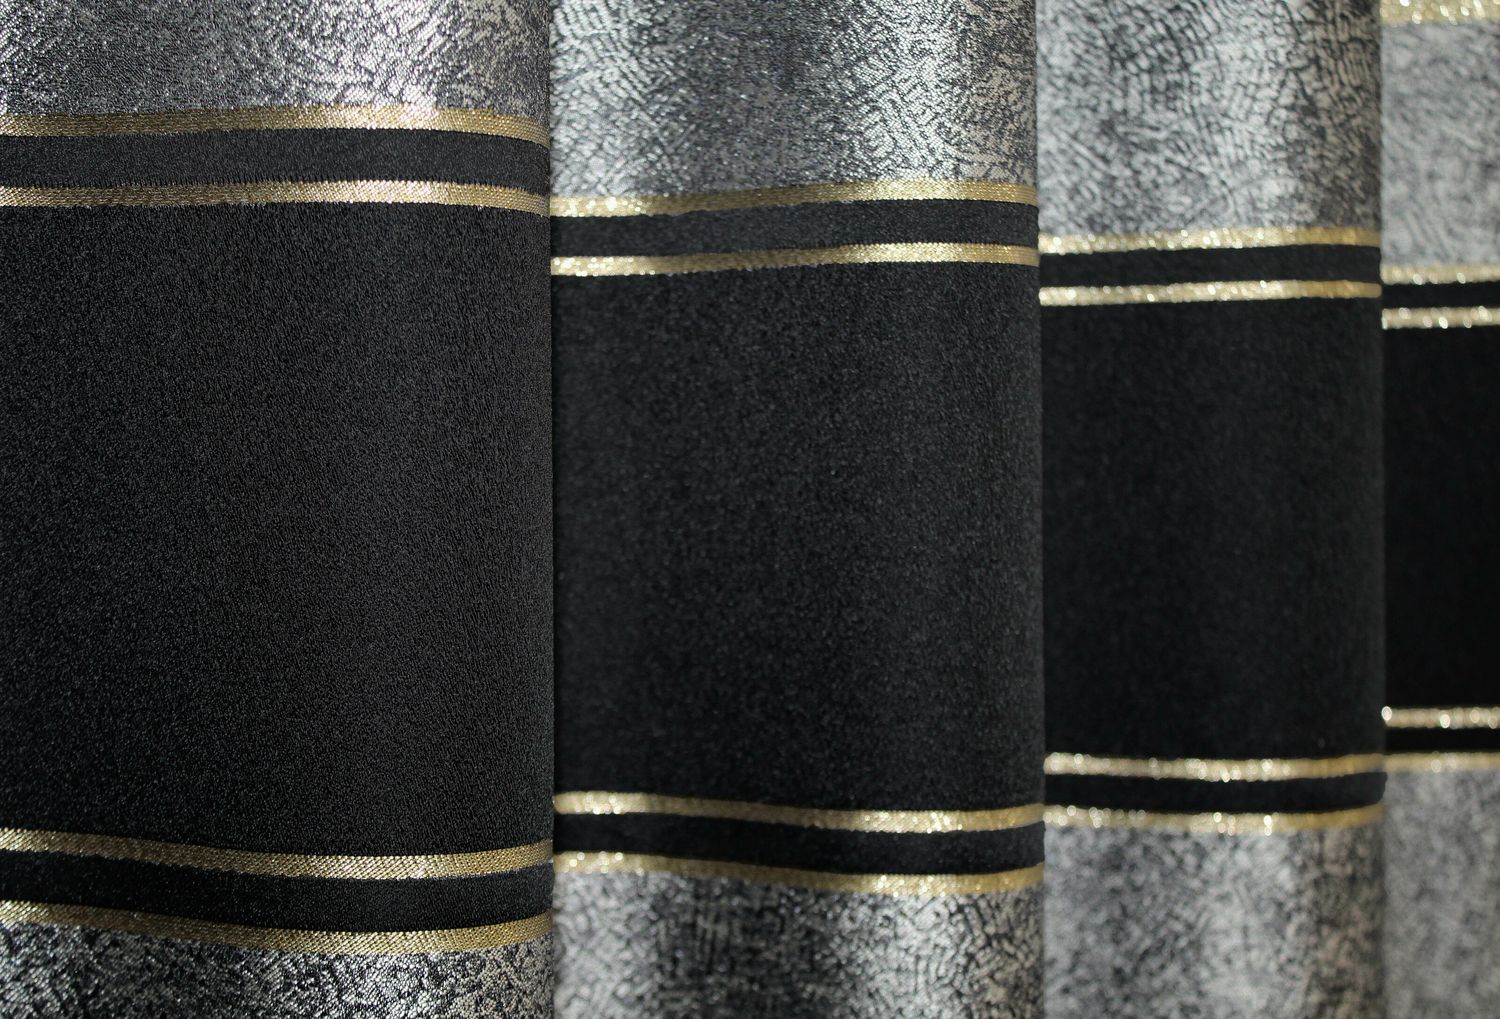 Шторы из ткани лен коллекции "ANZIO" цвет черный с серым 1307ш, Черный с серым, Комплект штор (2шт. 1,45х2,9м.), Классические, Без ламбрекена, Длинные, 1,45 м., 2,9 м., 145, 290, 2 - 3 м., Нет, Тесьма